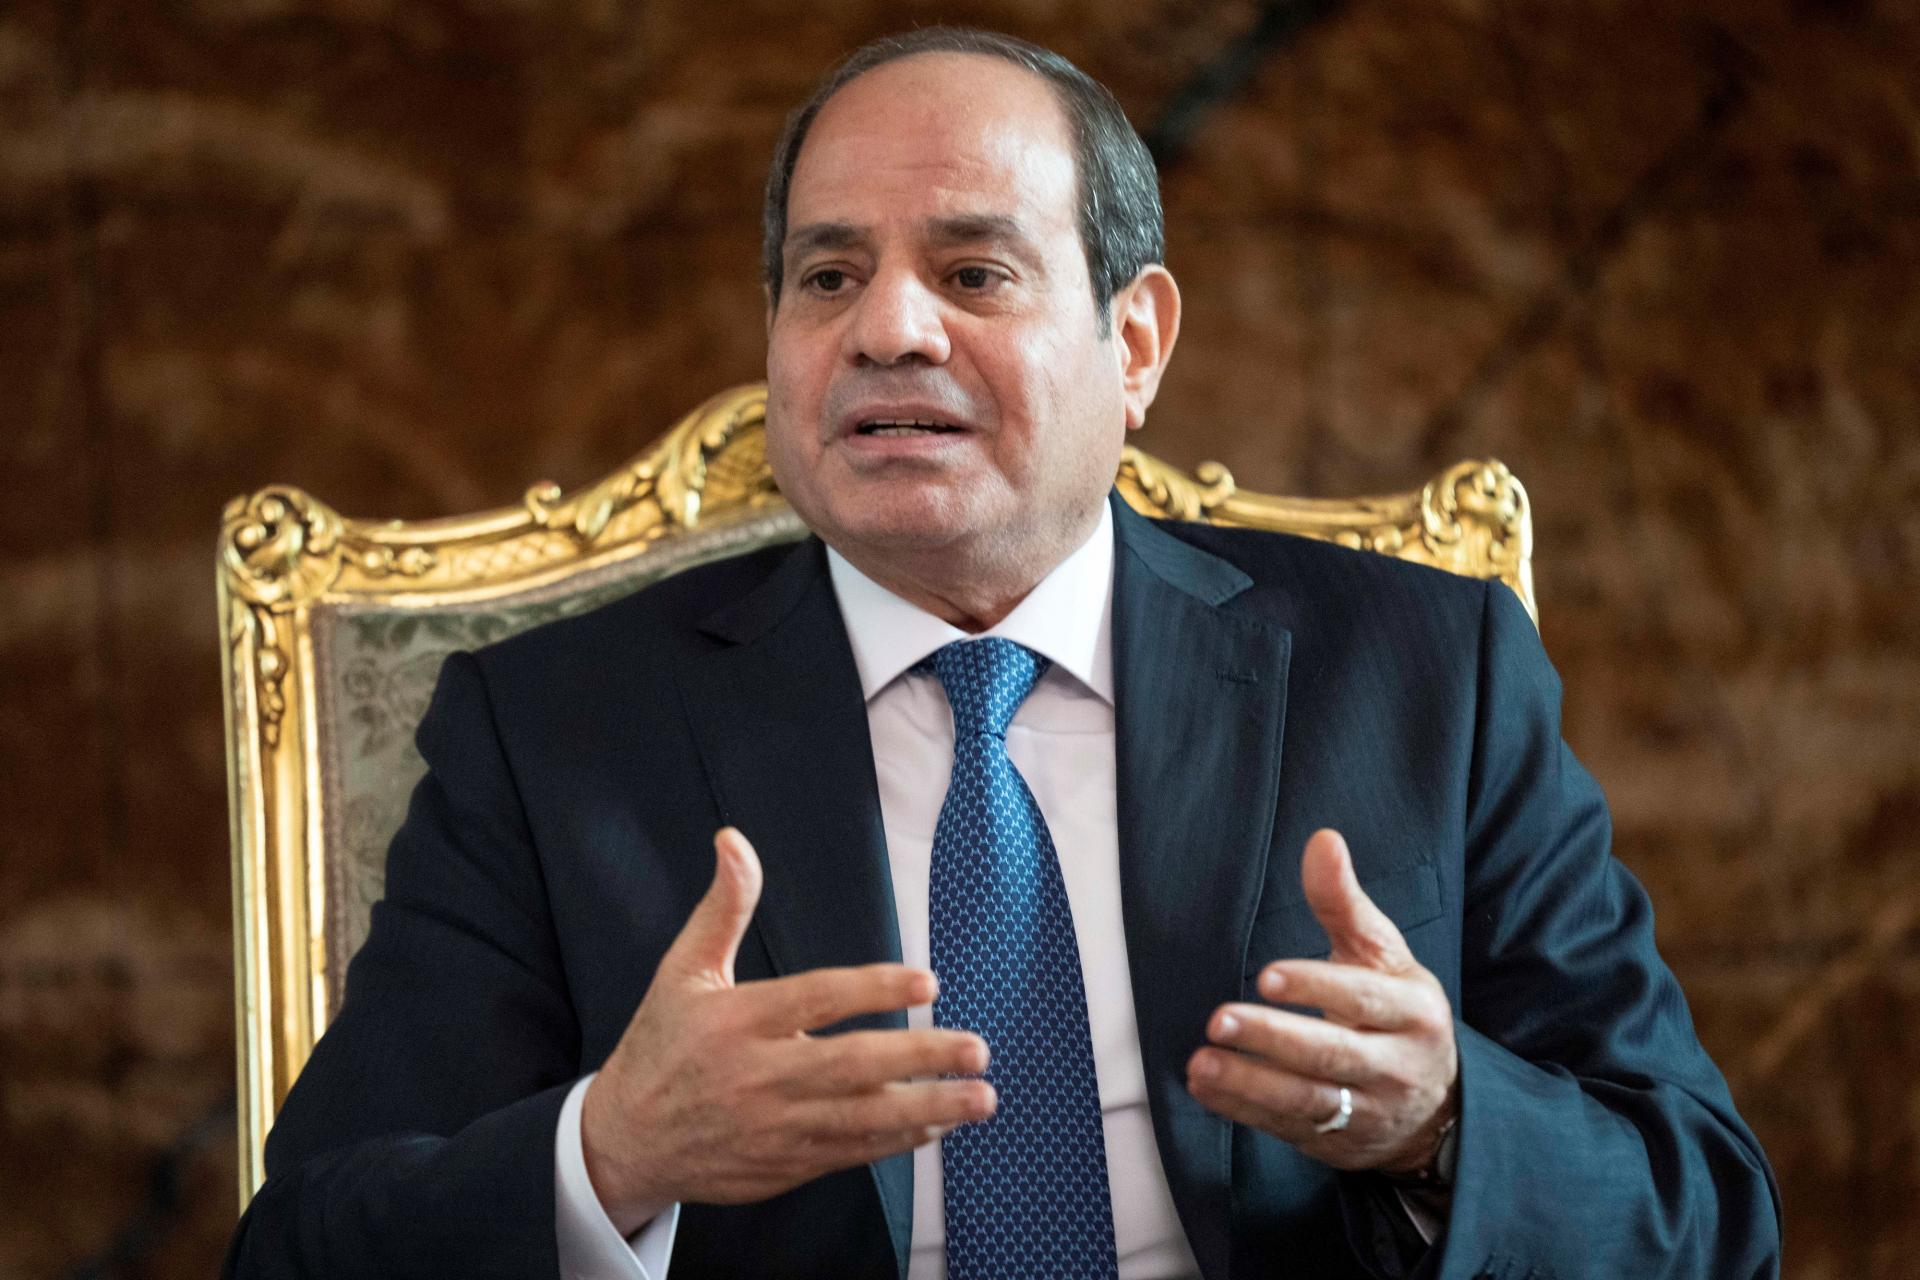 Egypt odmieta presun Palestínčanov na niečí úkor, uviedol egyptský prezident